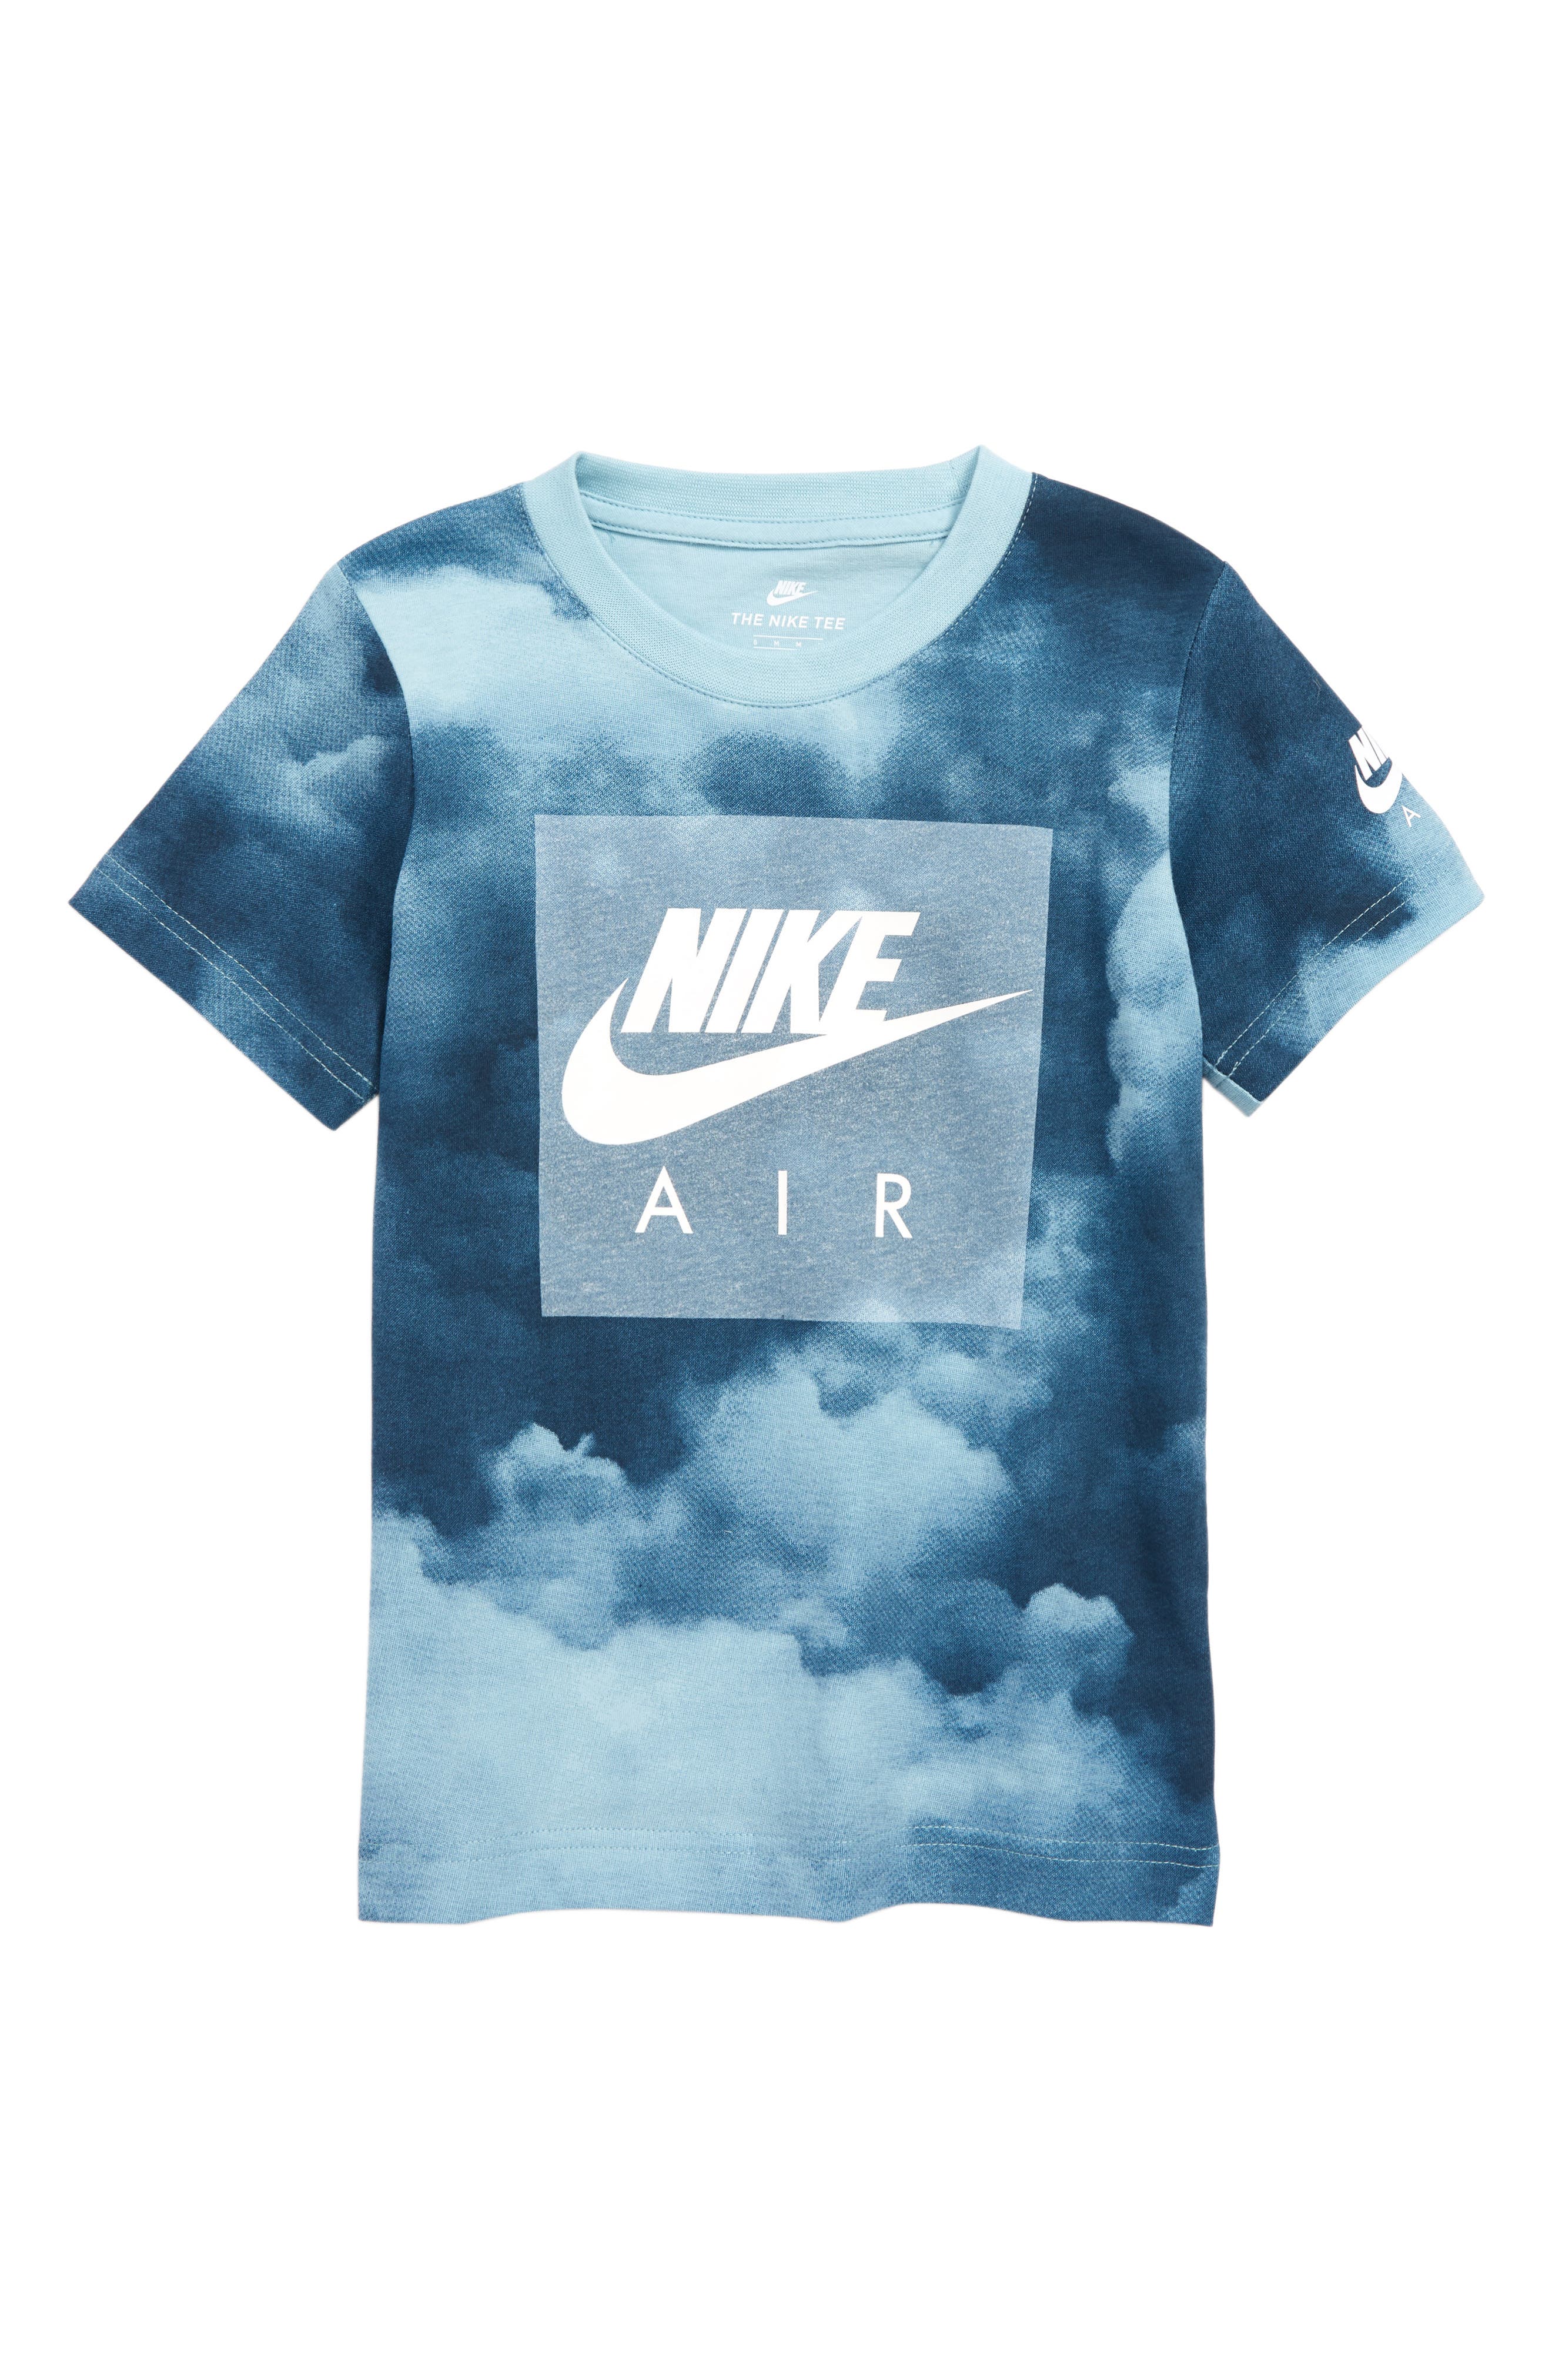 nike air cloud t shirt